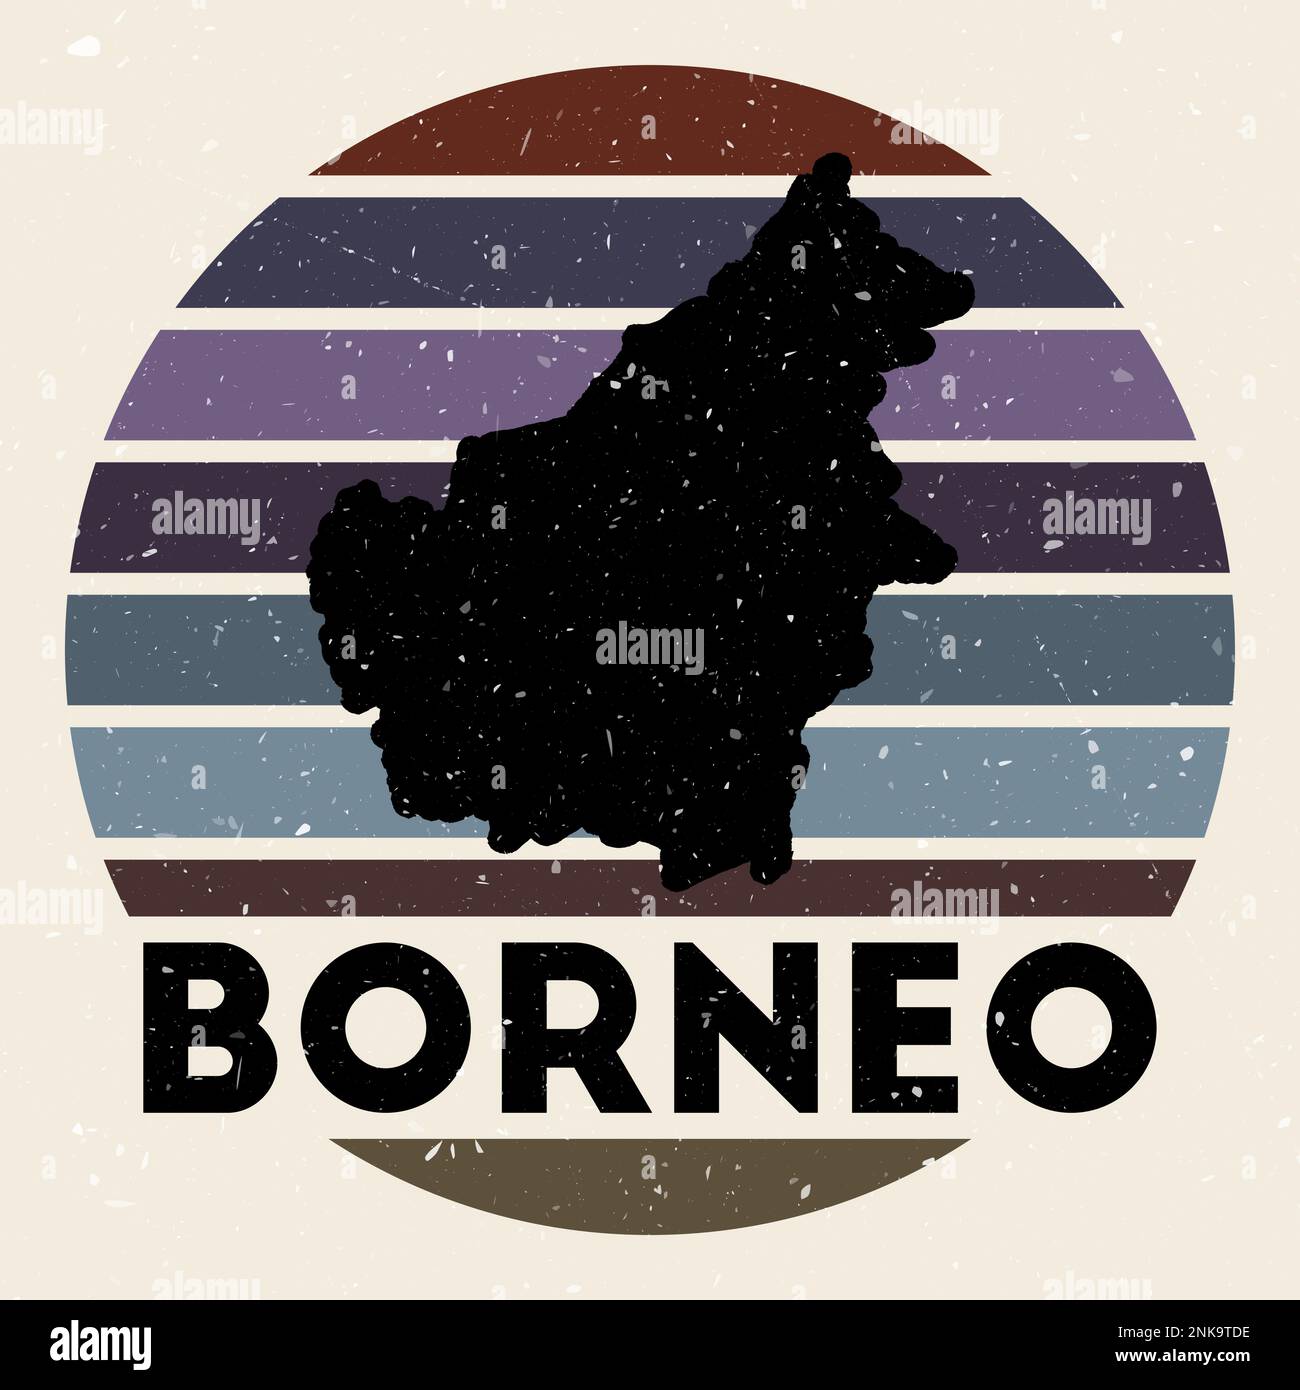 Logo Borneo. Segno con la mappa di isola e strisce colorate, illustrazione vettoriale. Può essere utilizzato come insegna, logotipo, etichetta, adesivo o badge della B. Illustrazione Vettoriale